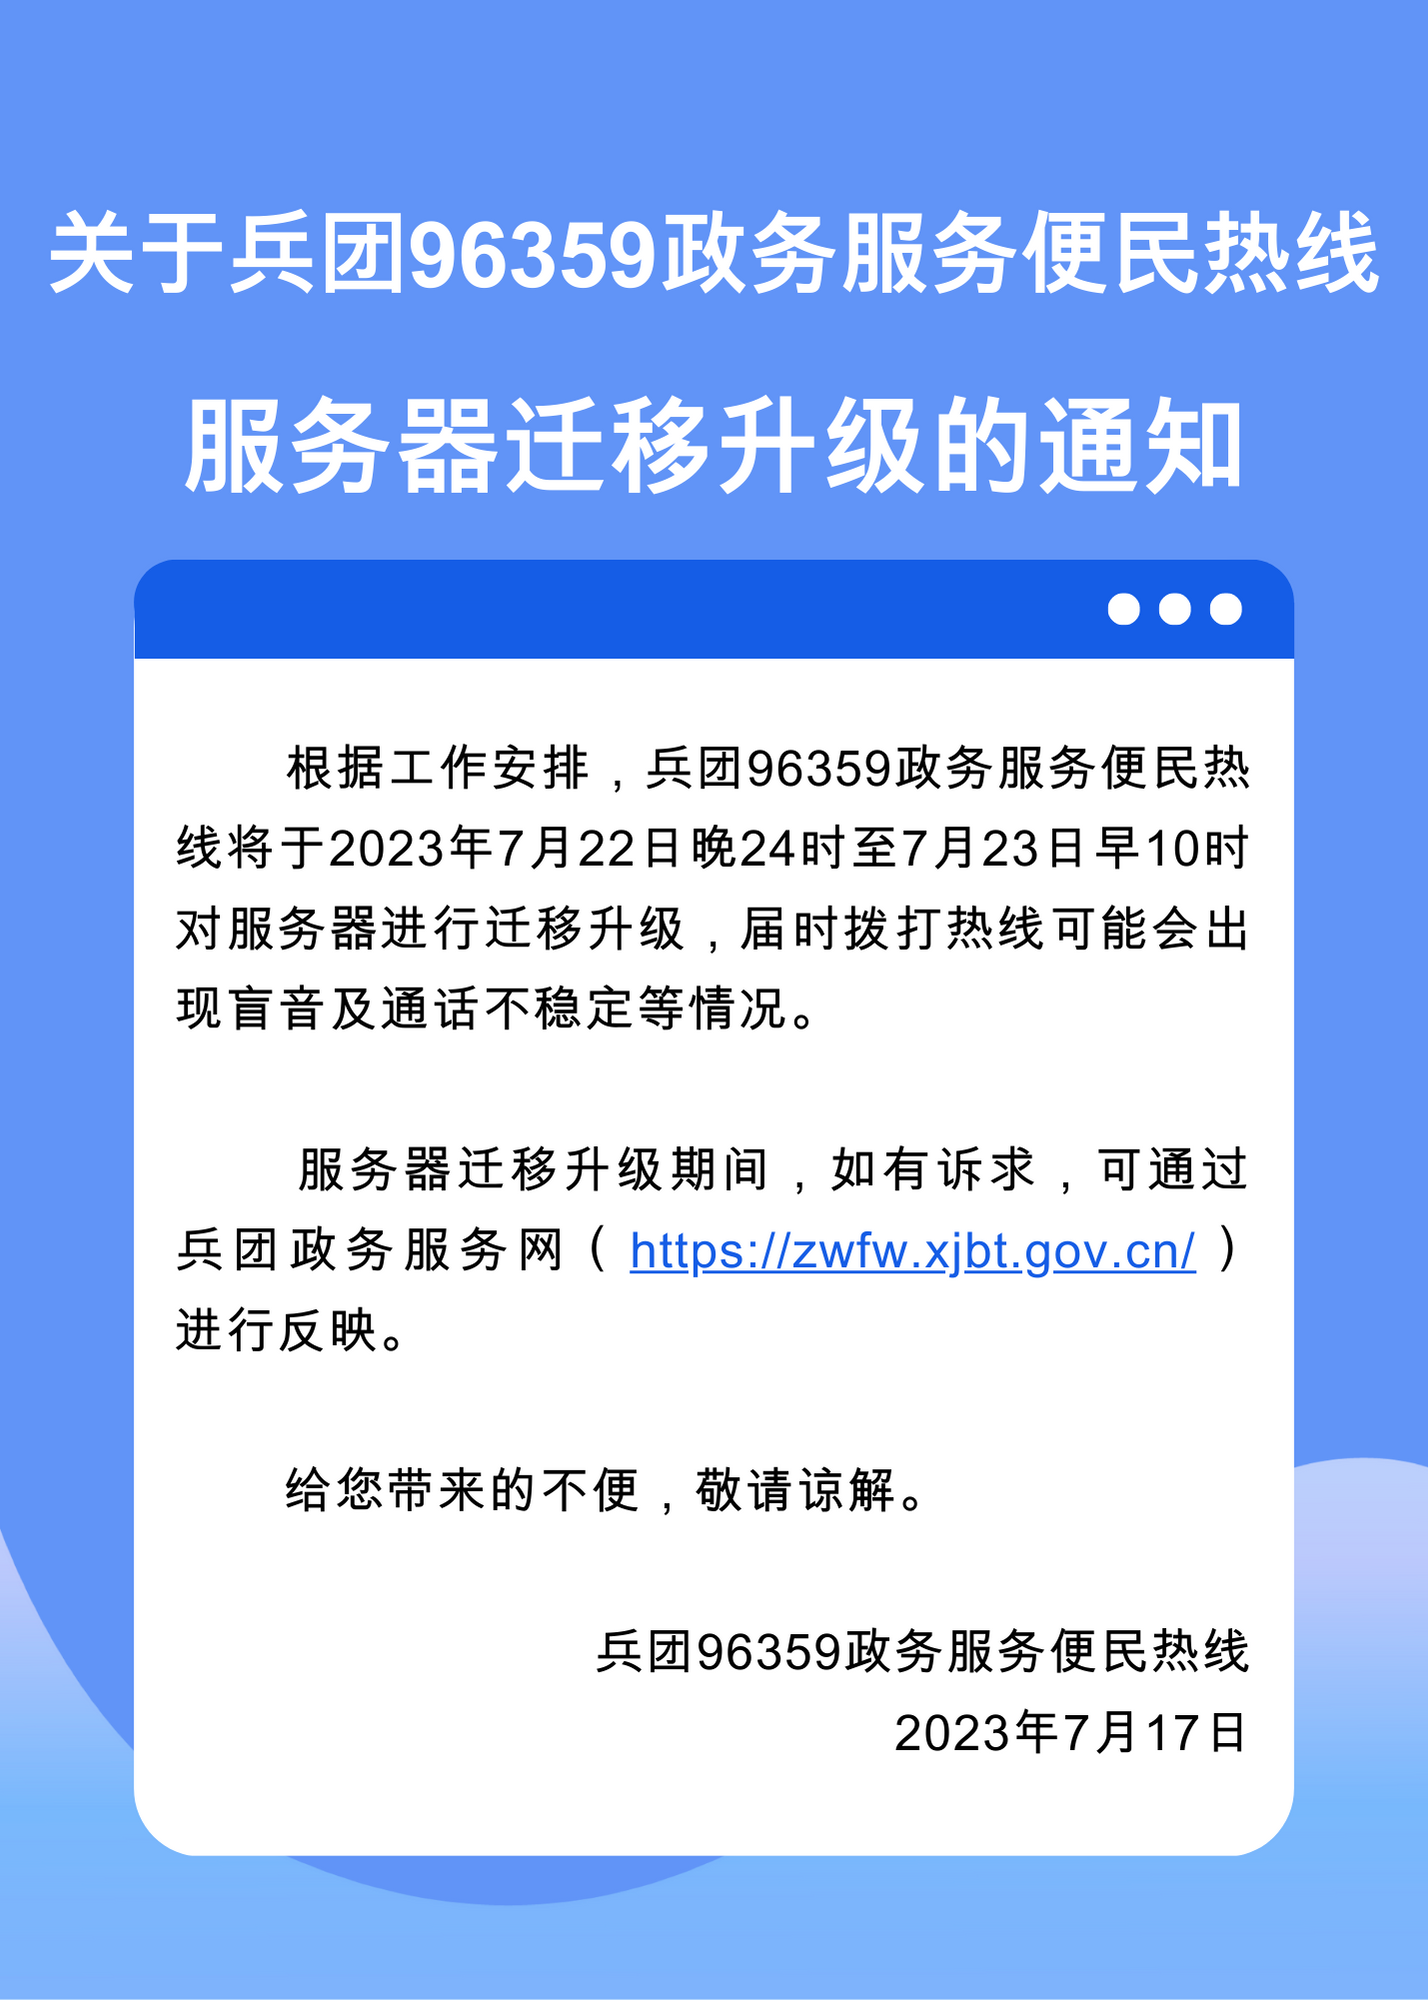 蓝白色防疫通知矢量企业分享中文公告 (4).png